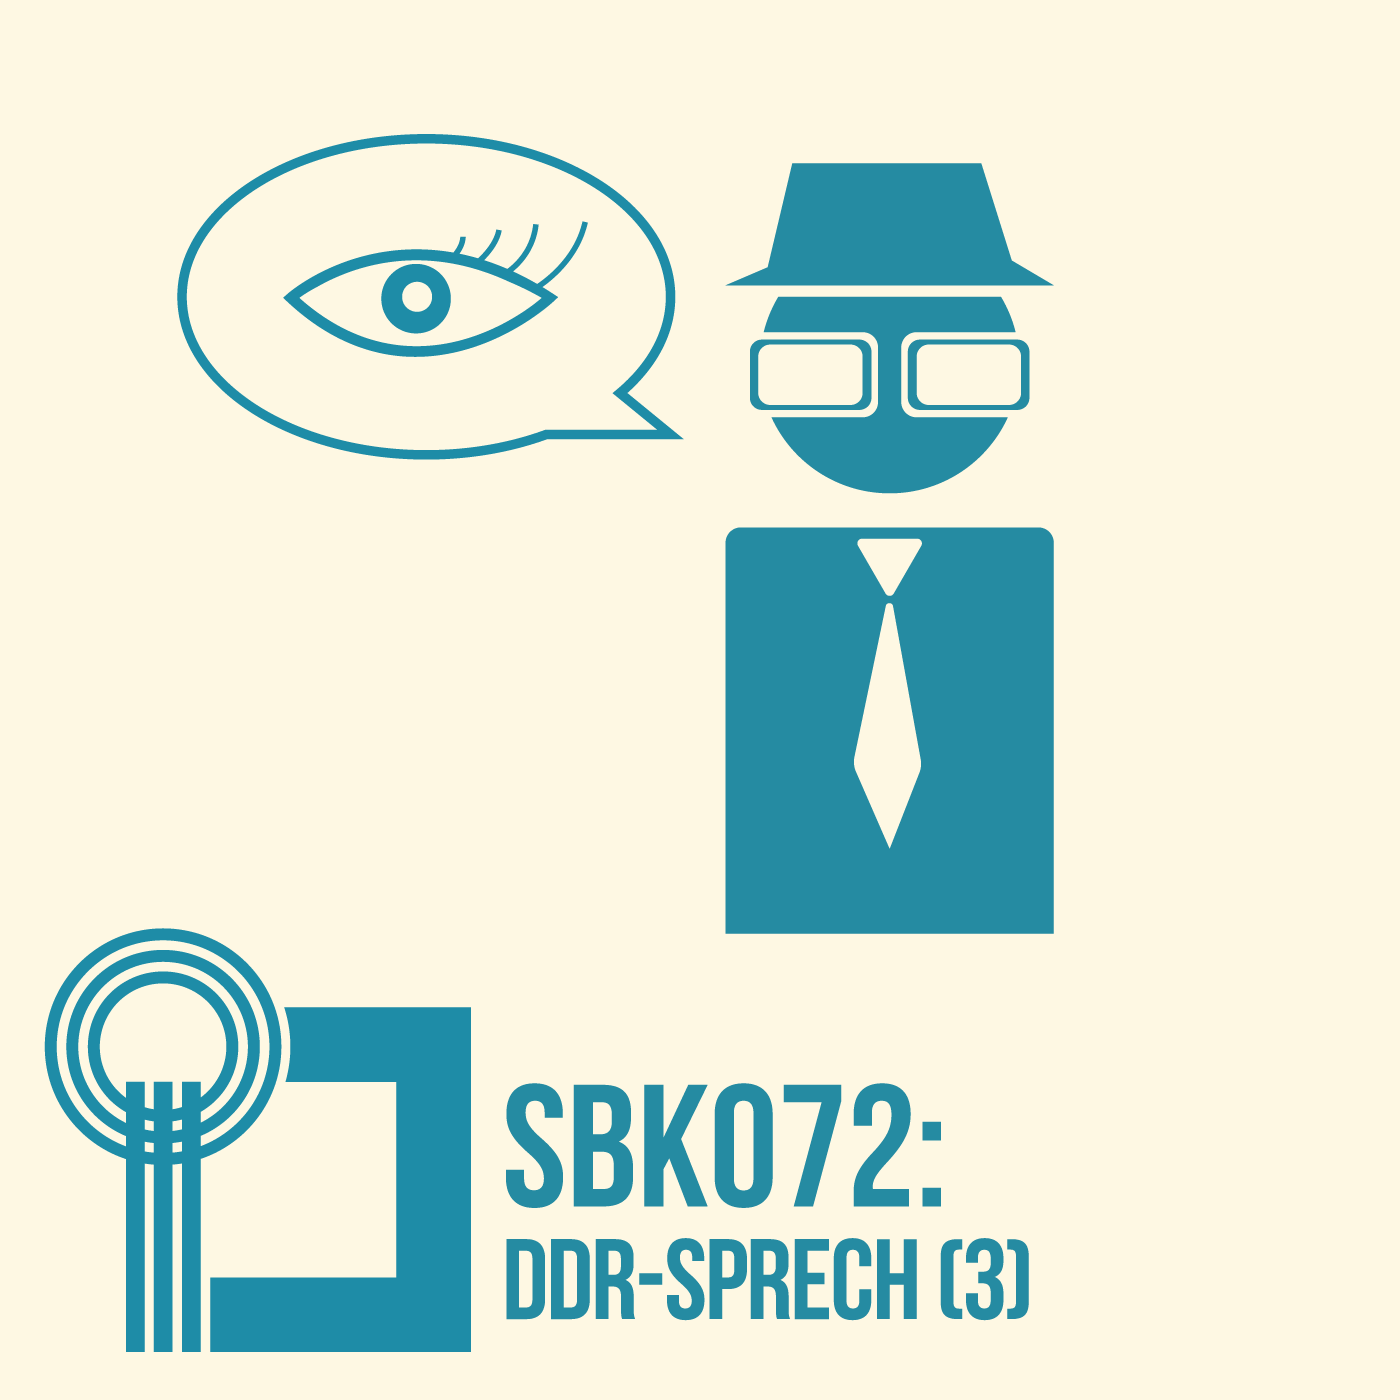 DDR-Sprech (3)